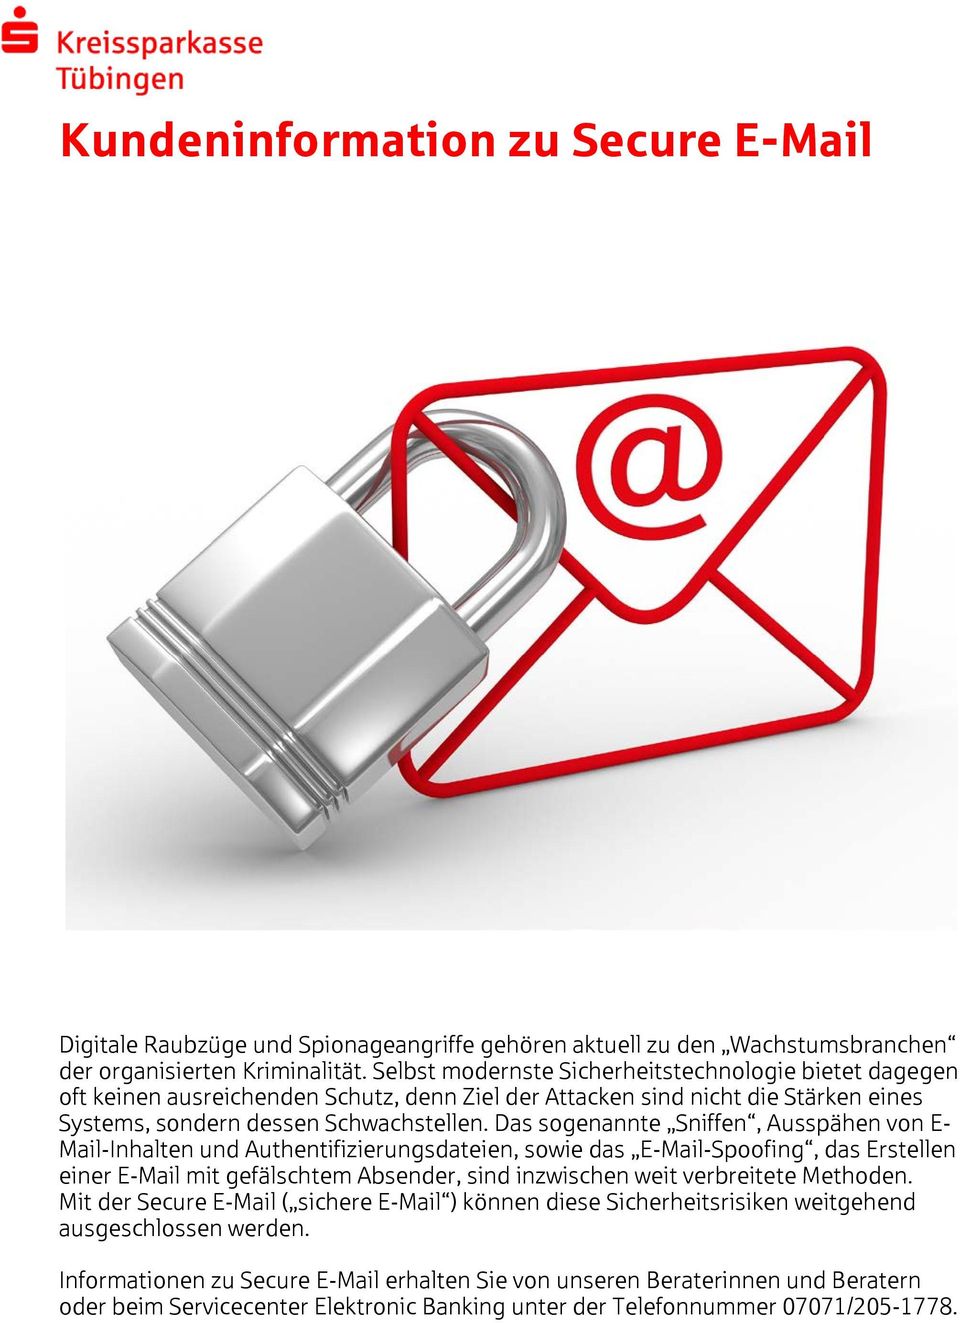 Das sogenannte Sniffen, Ausspähen von E- Mail-Inhalten und Authentifizierungsdateien, sowie das E-Mail-Spoofing, das Erstellen einer E-Mail mit gefälschtem Absender, sind inzwischen weit verbreitete